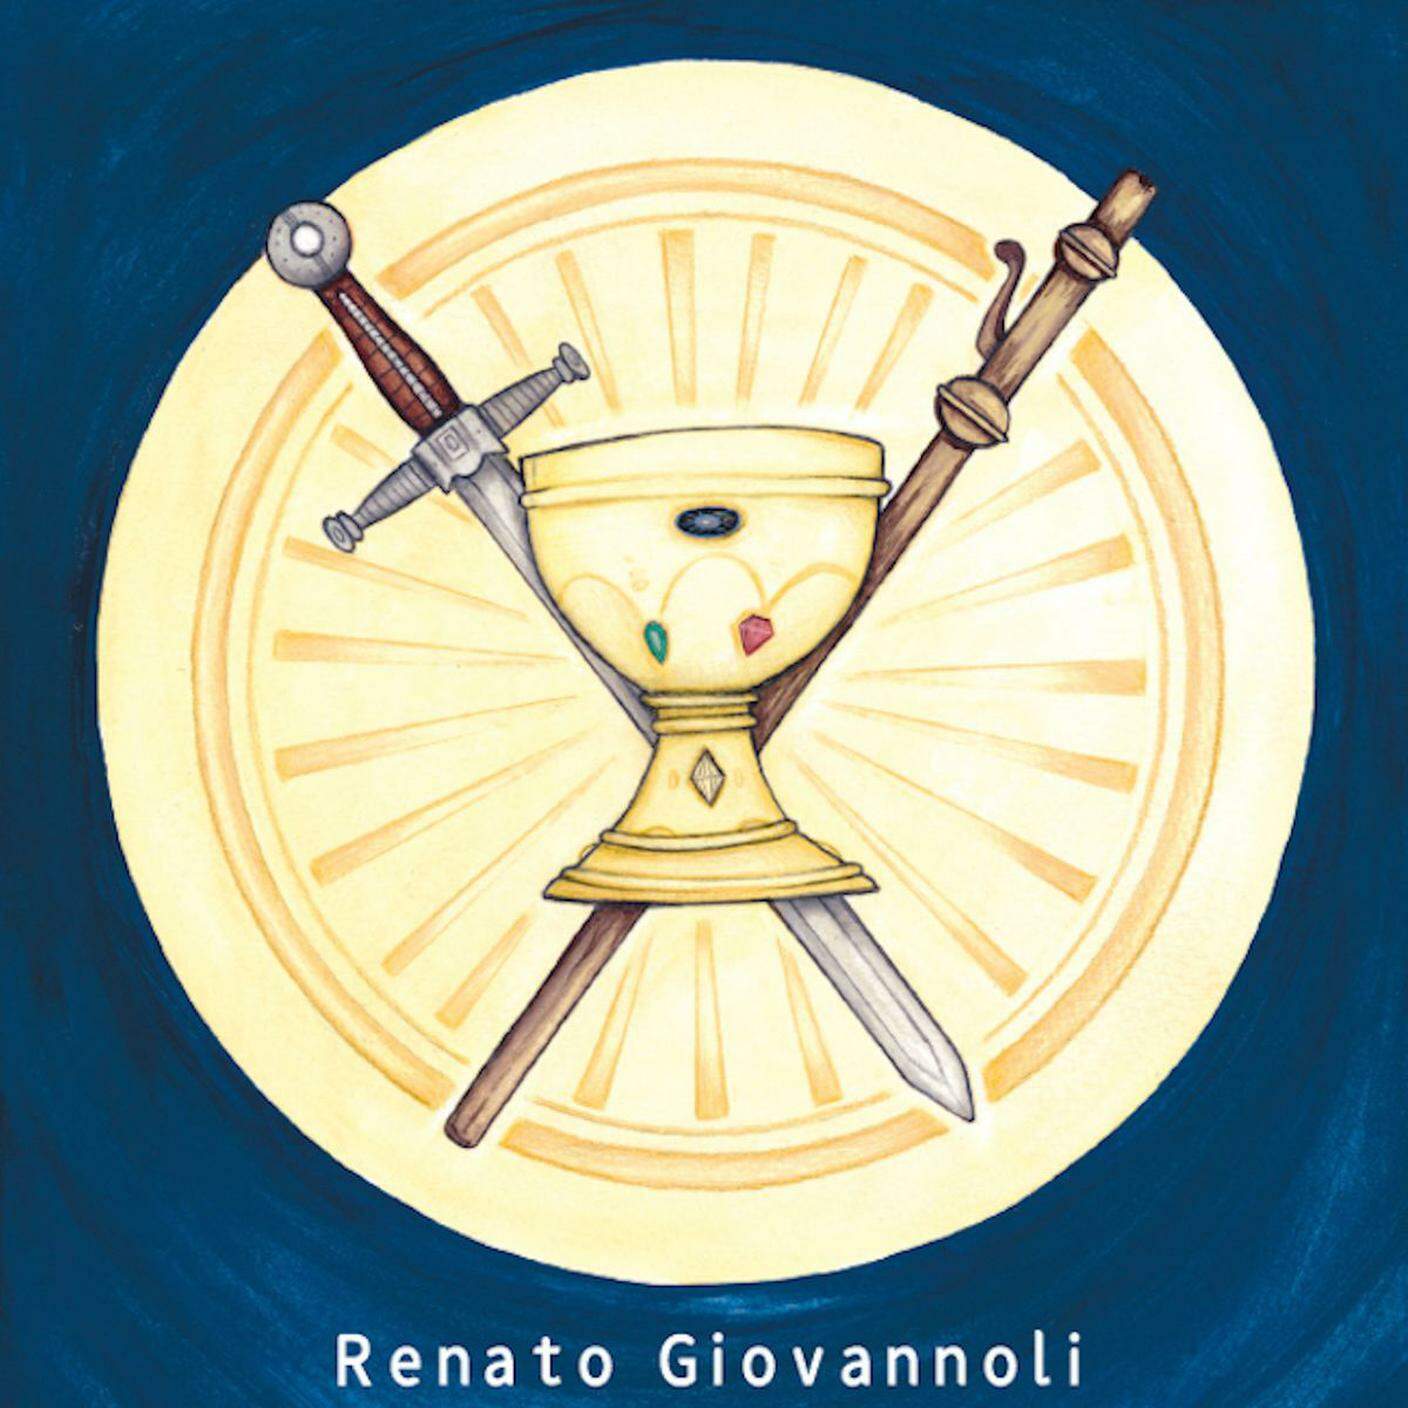 Renato Giovannoli, "I predoni del Santo Graal", Àncora-SociaLibri (dettaglio copertina)